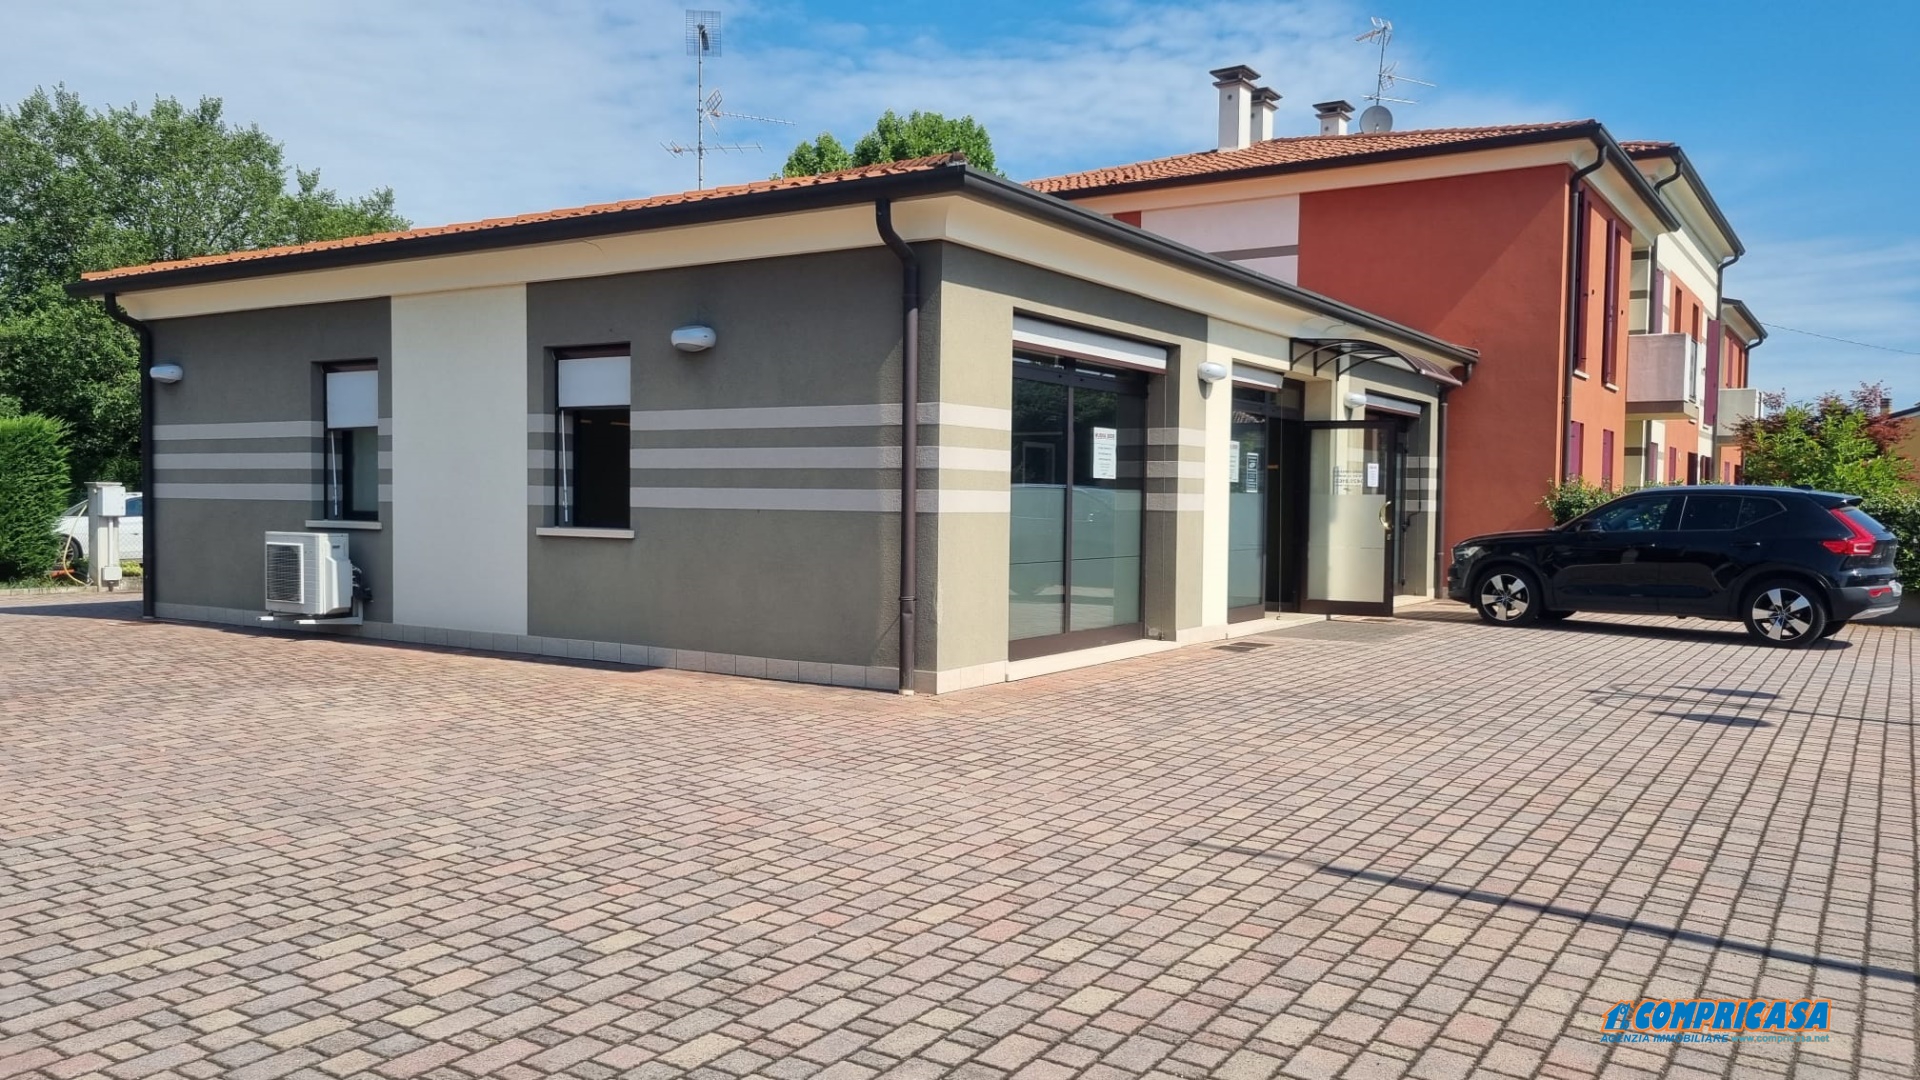 Negozio / Locale in vendita a Montagnana, 3 locali, prezzo € 290.000 | PortaleAgenzieImmobiliari.it